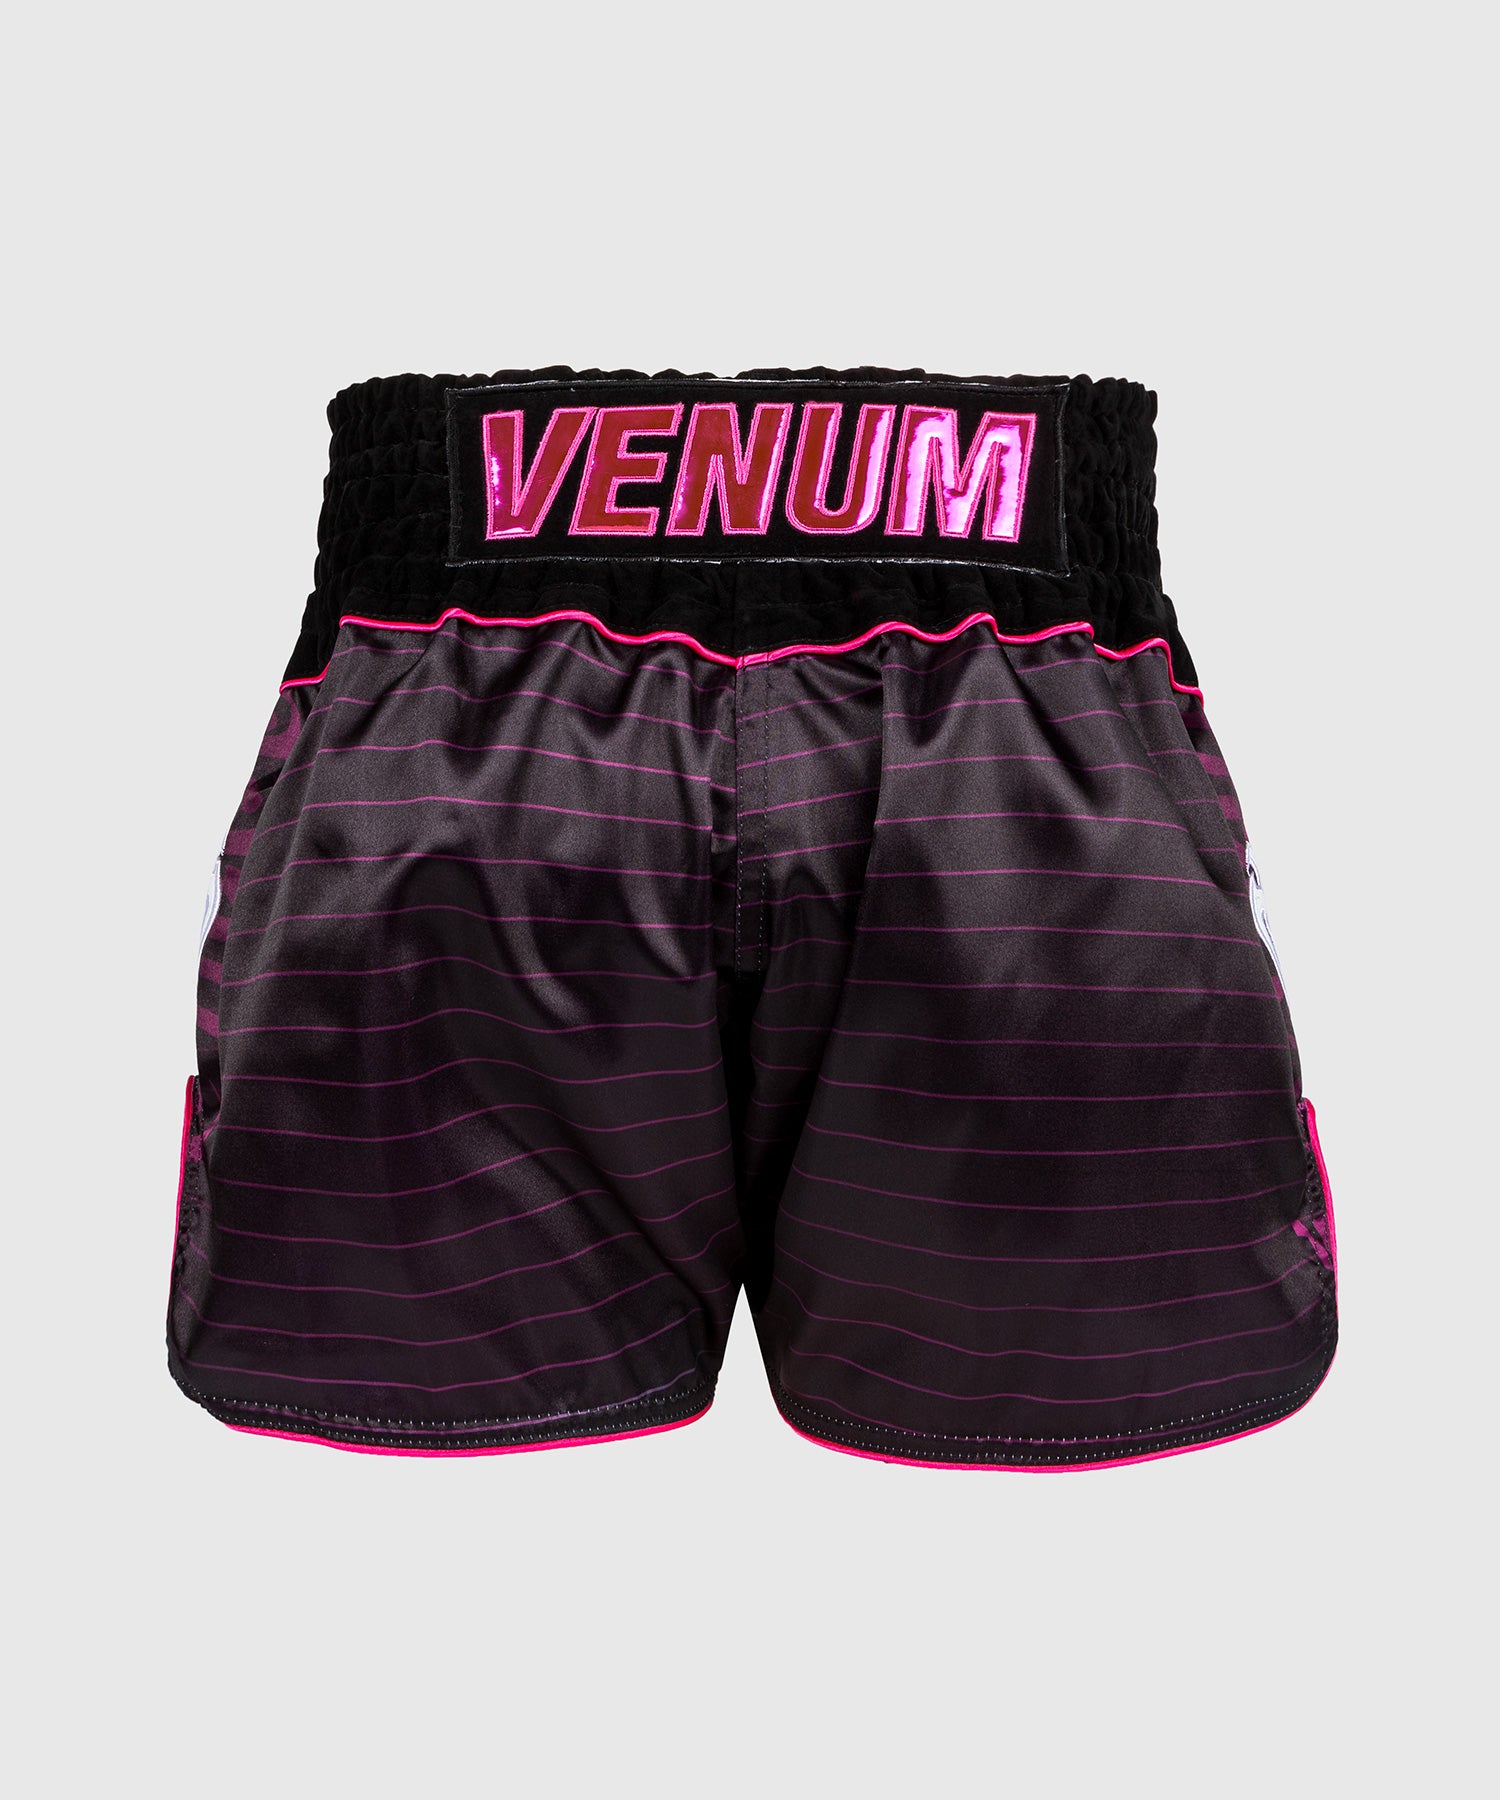 Pantalones cortos de Muay Thai – Venum España